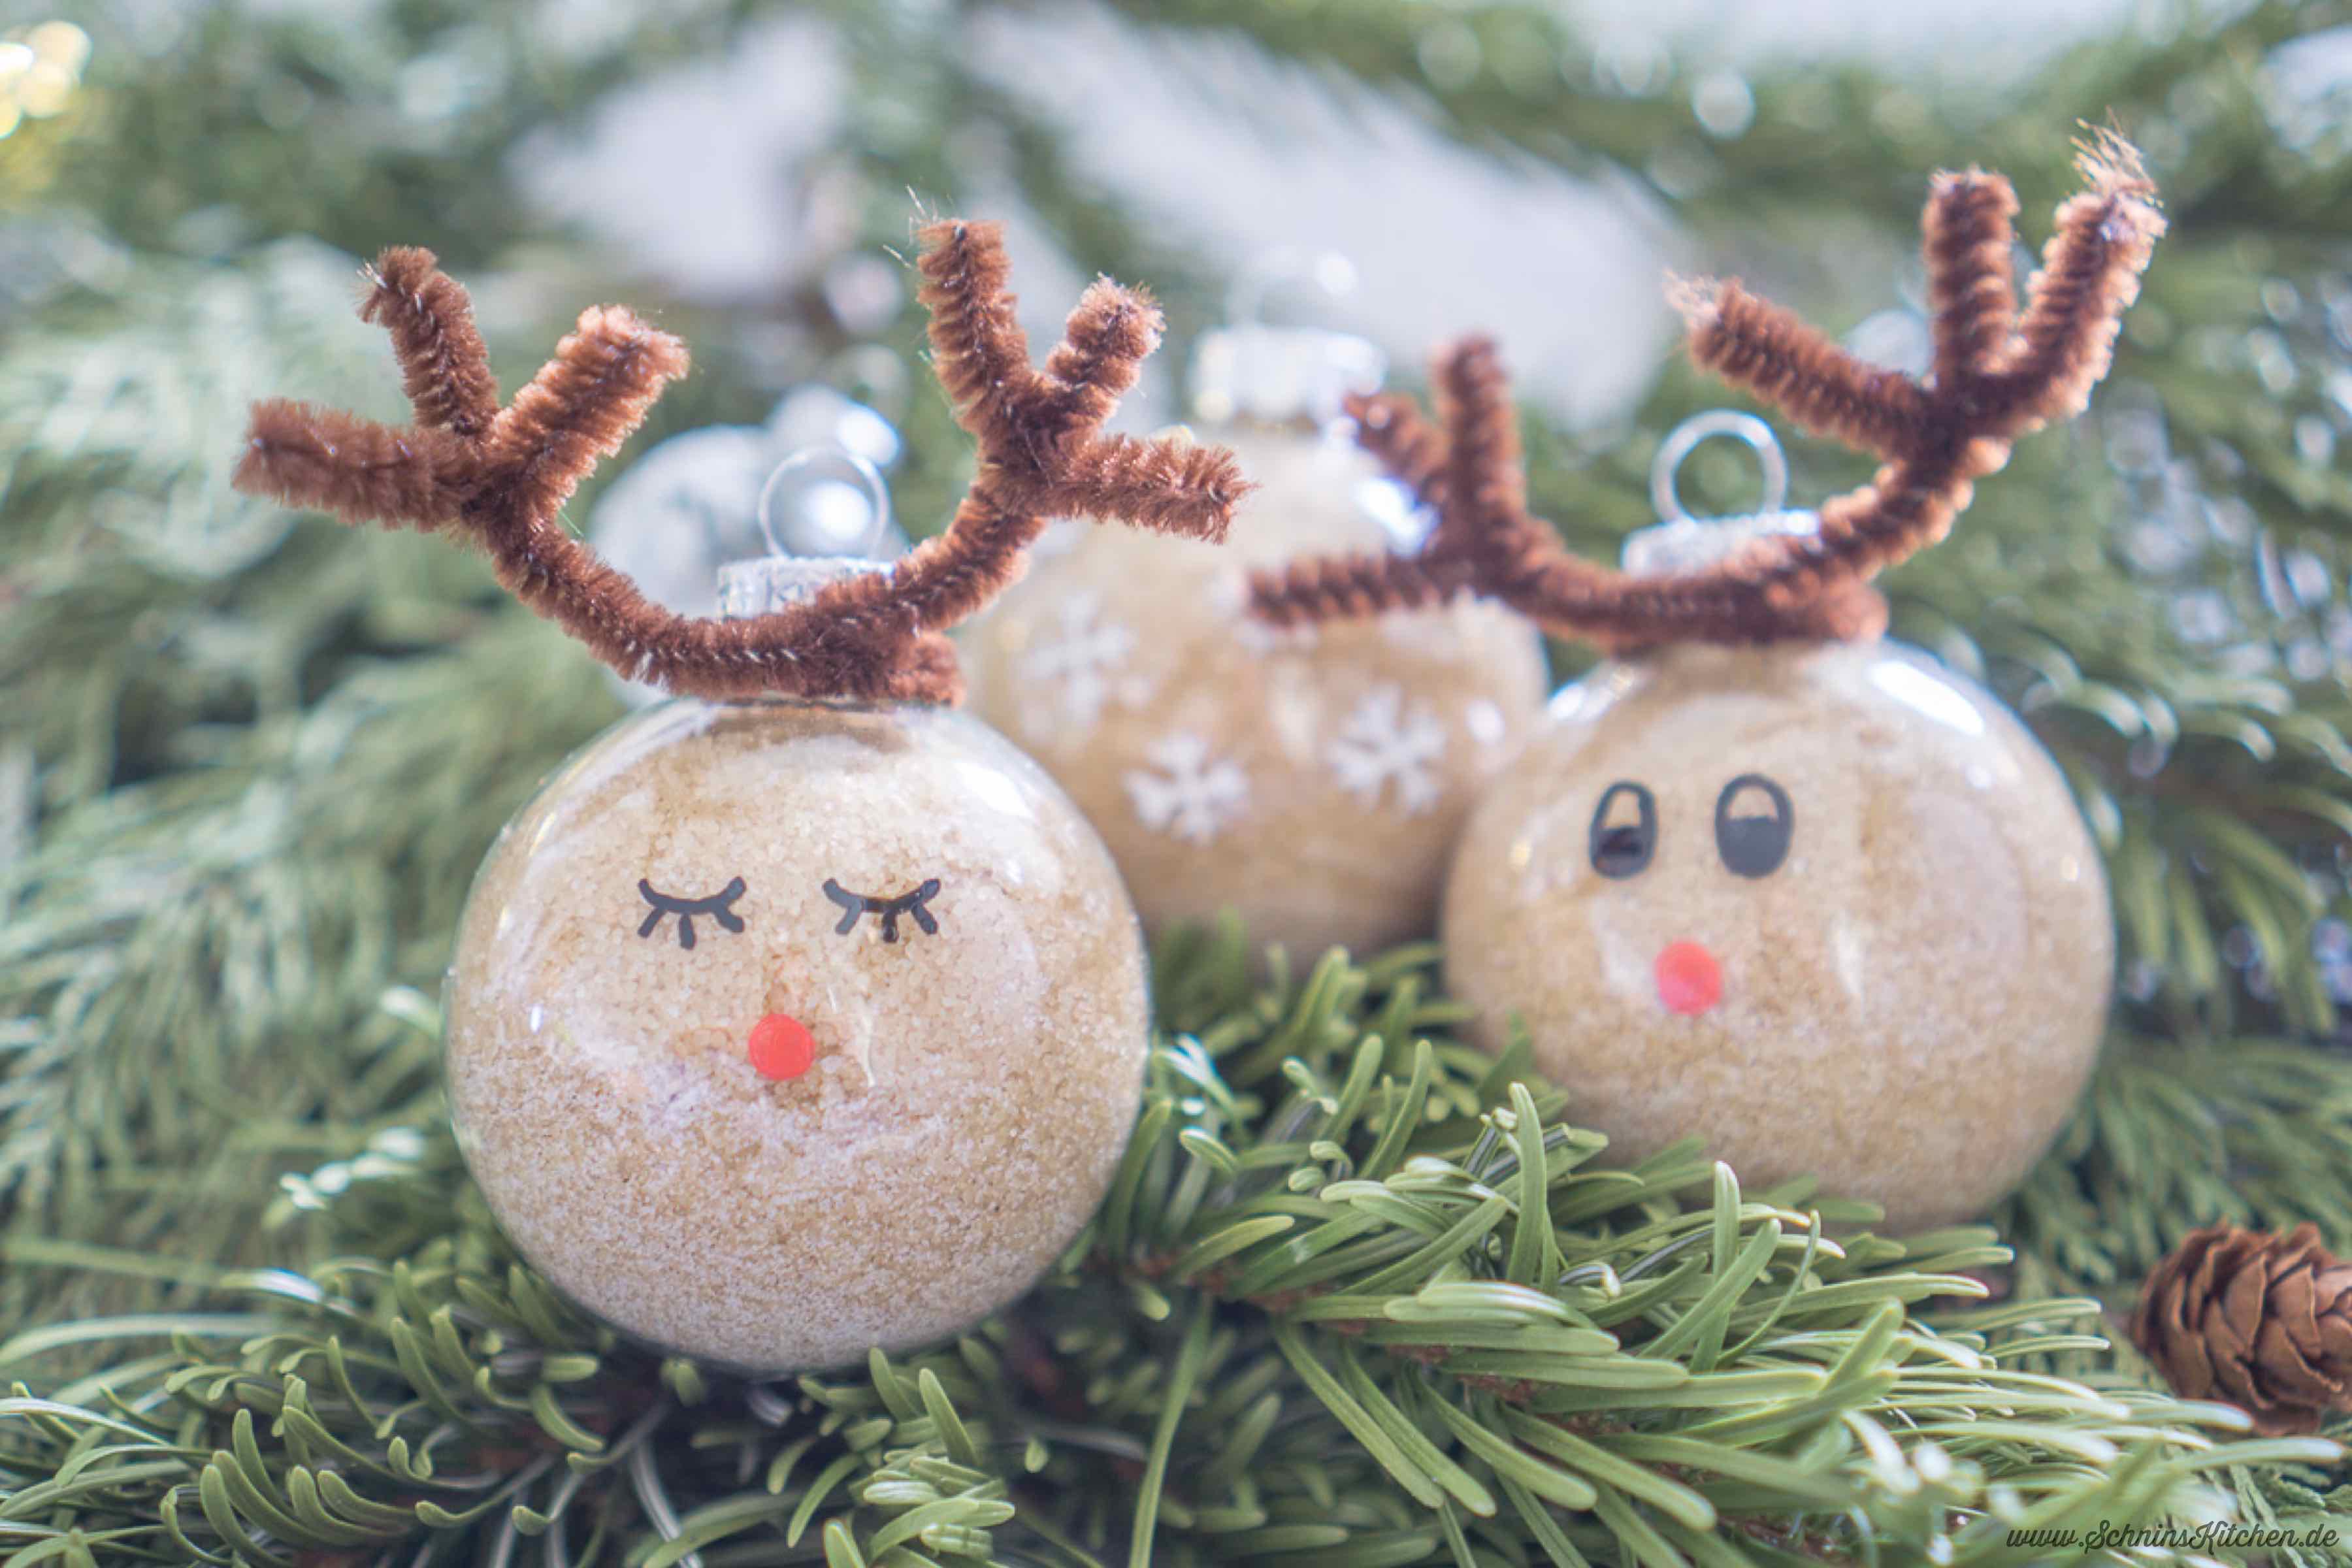 Weihnachtszucker selber machen - ein leckeres Rezept für Zucker mit Vanille und feinen Weihnachtsgewürzen als Geschenk aus der Küche | www.schninskitchen.de